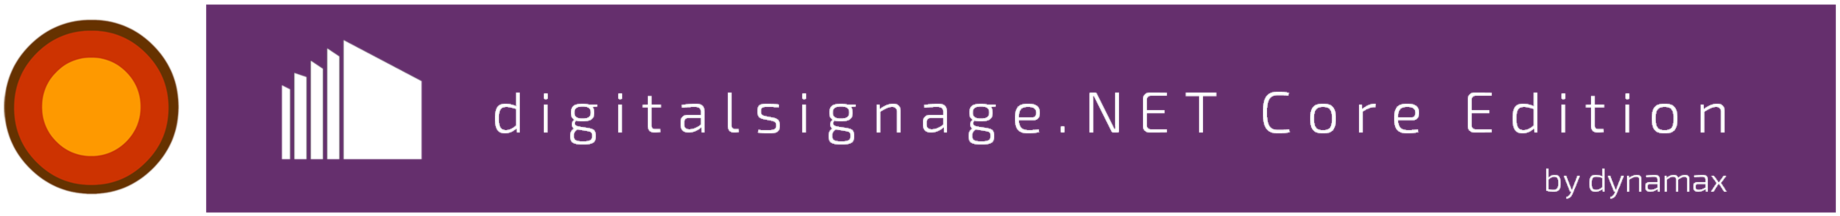 digitalsignage banner